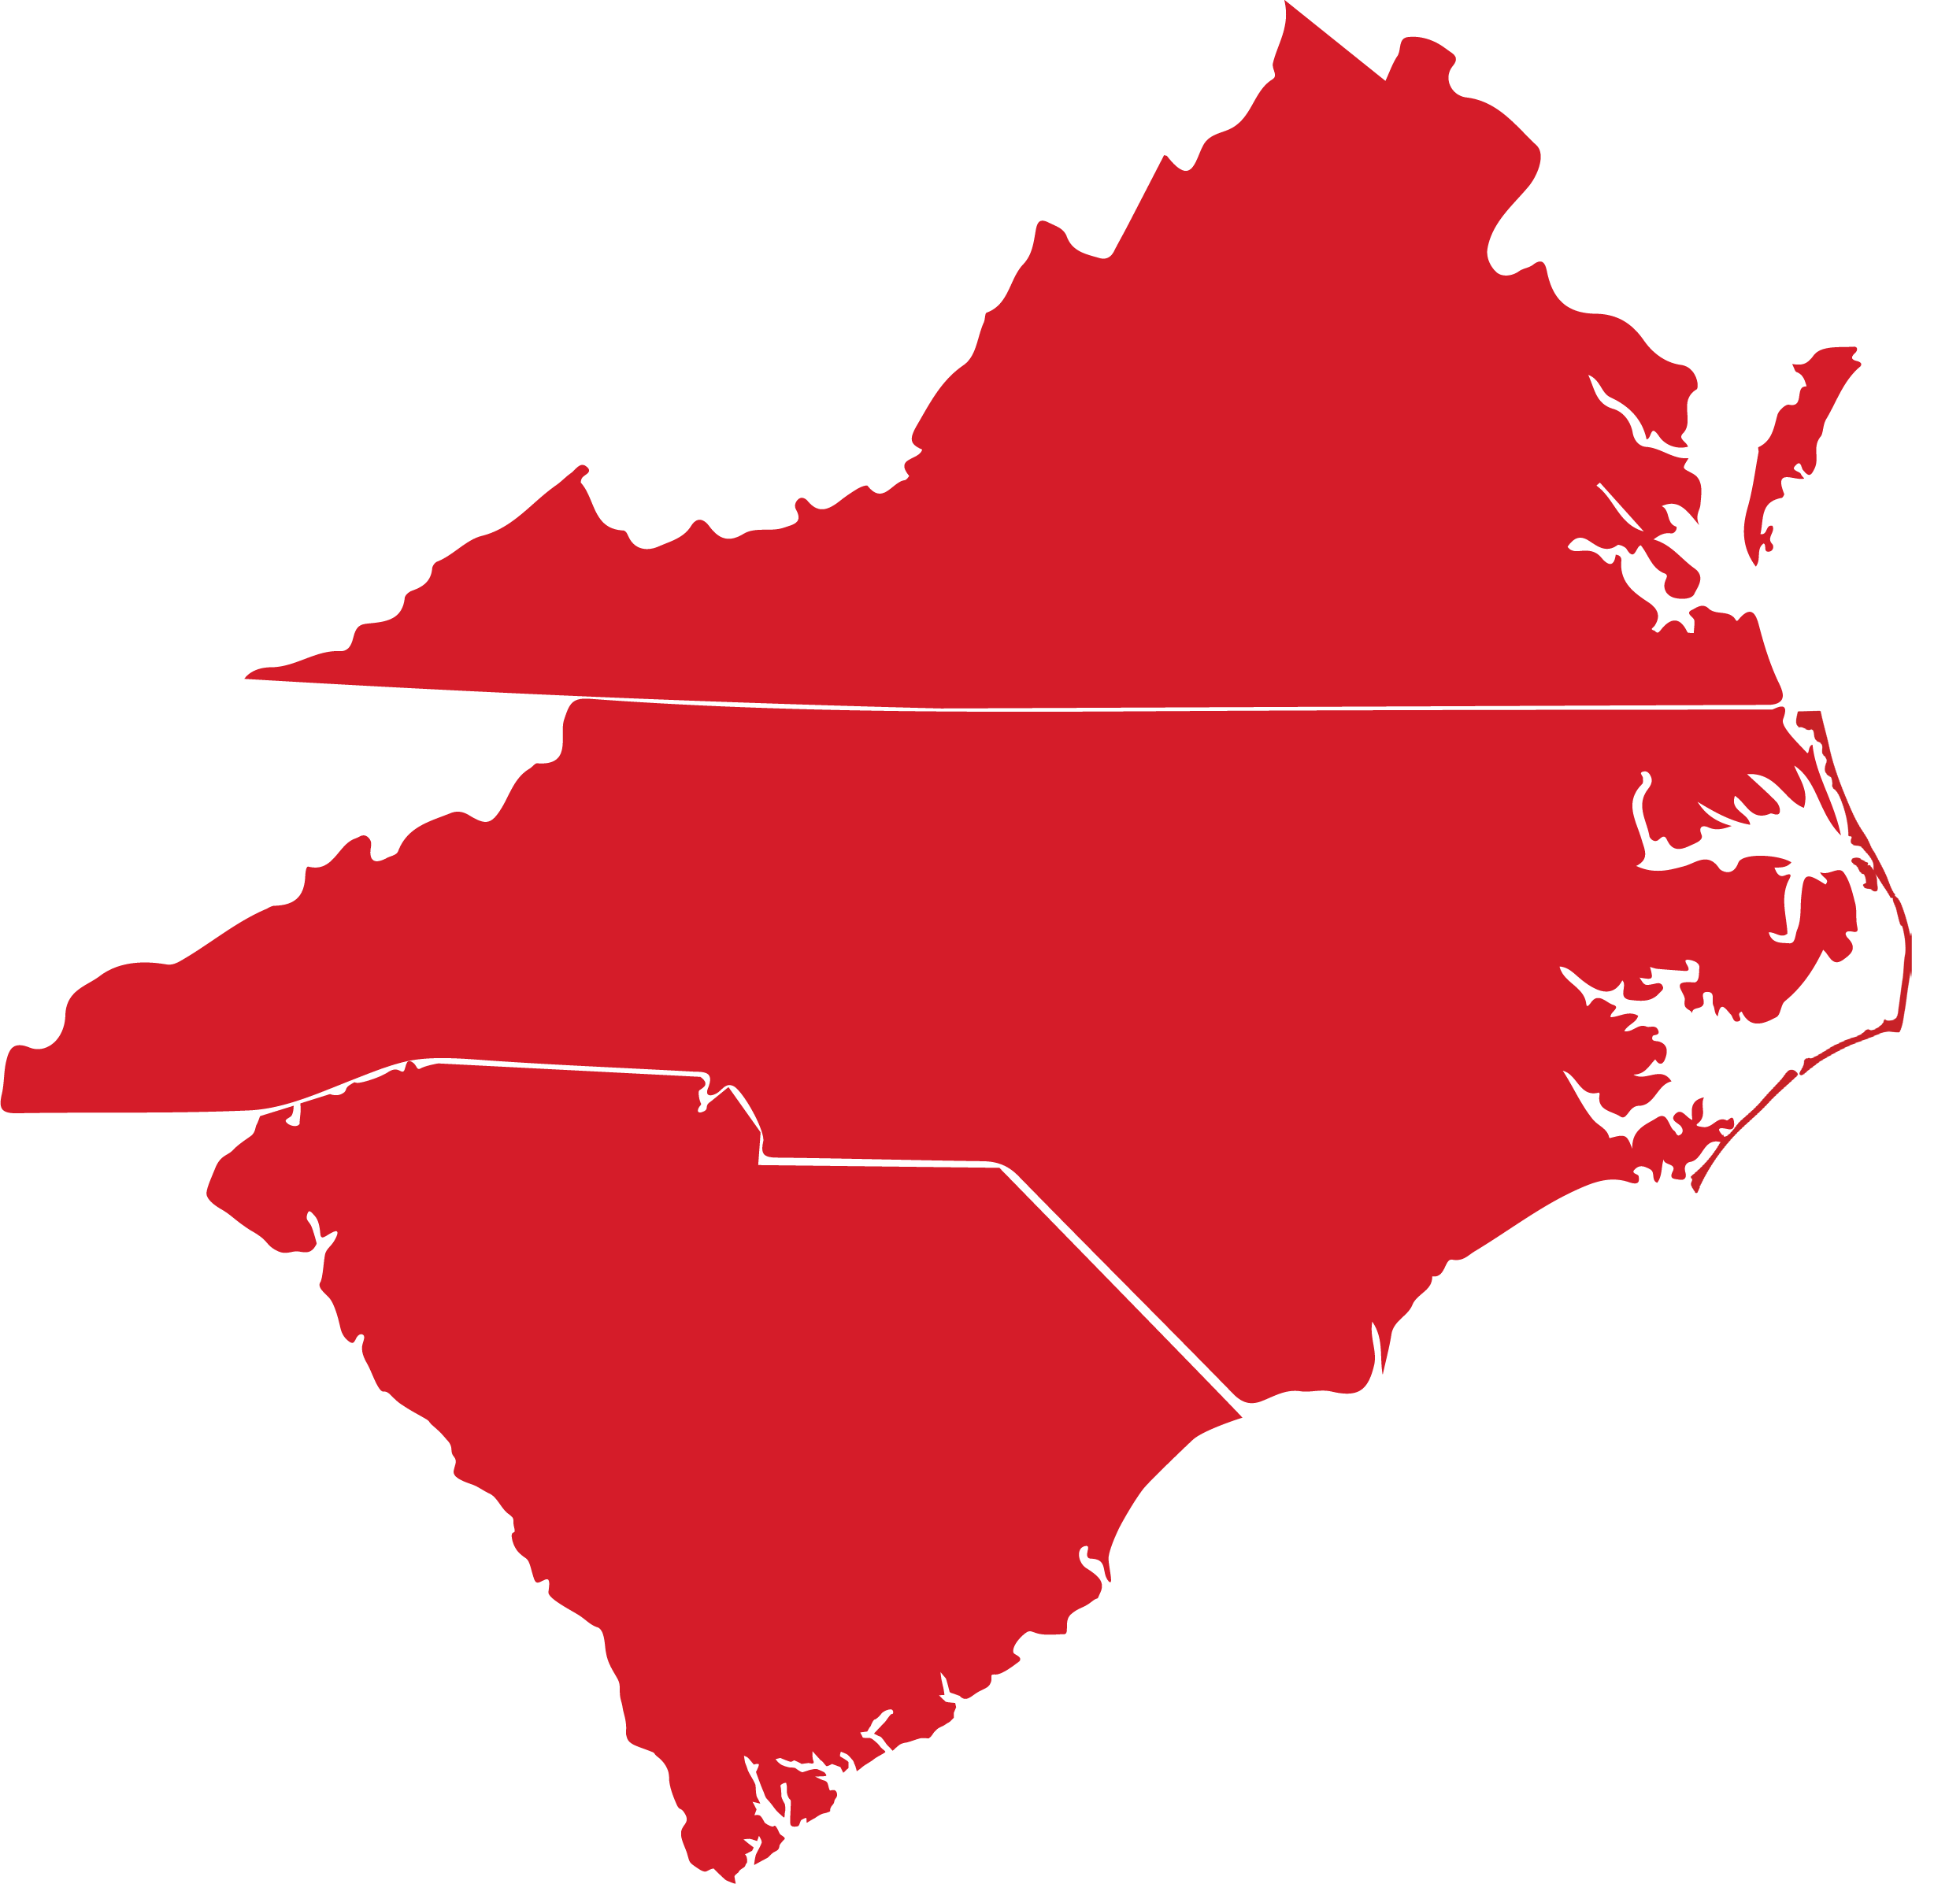 Map of Virginia and North Carolina